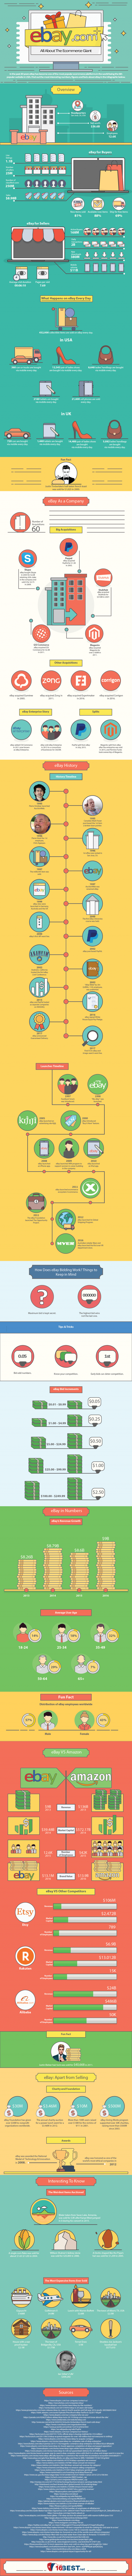 Ebay Infographic